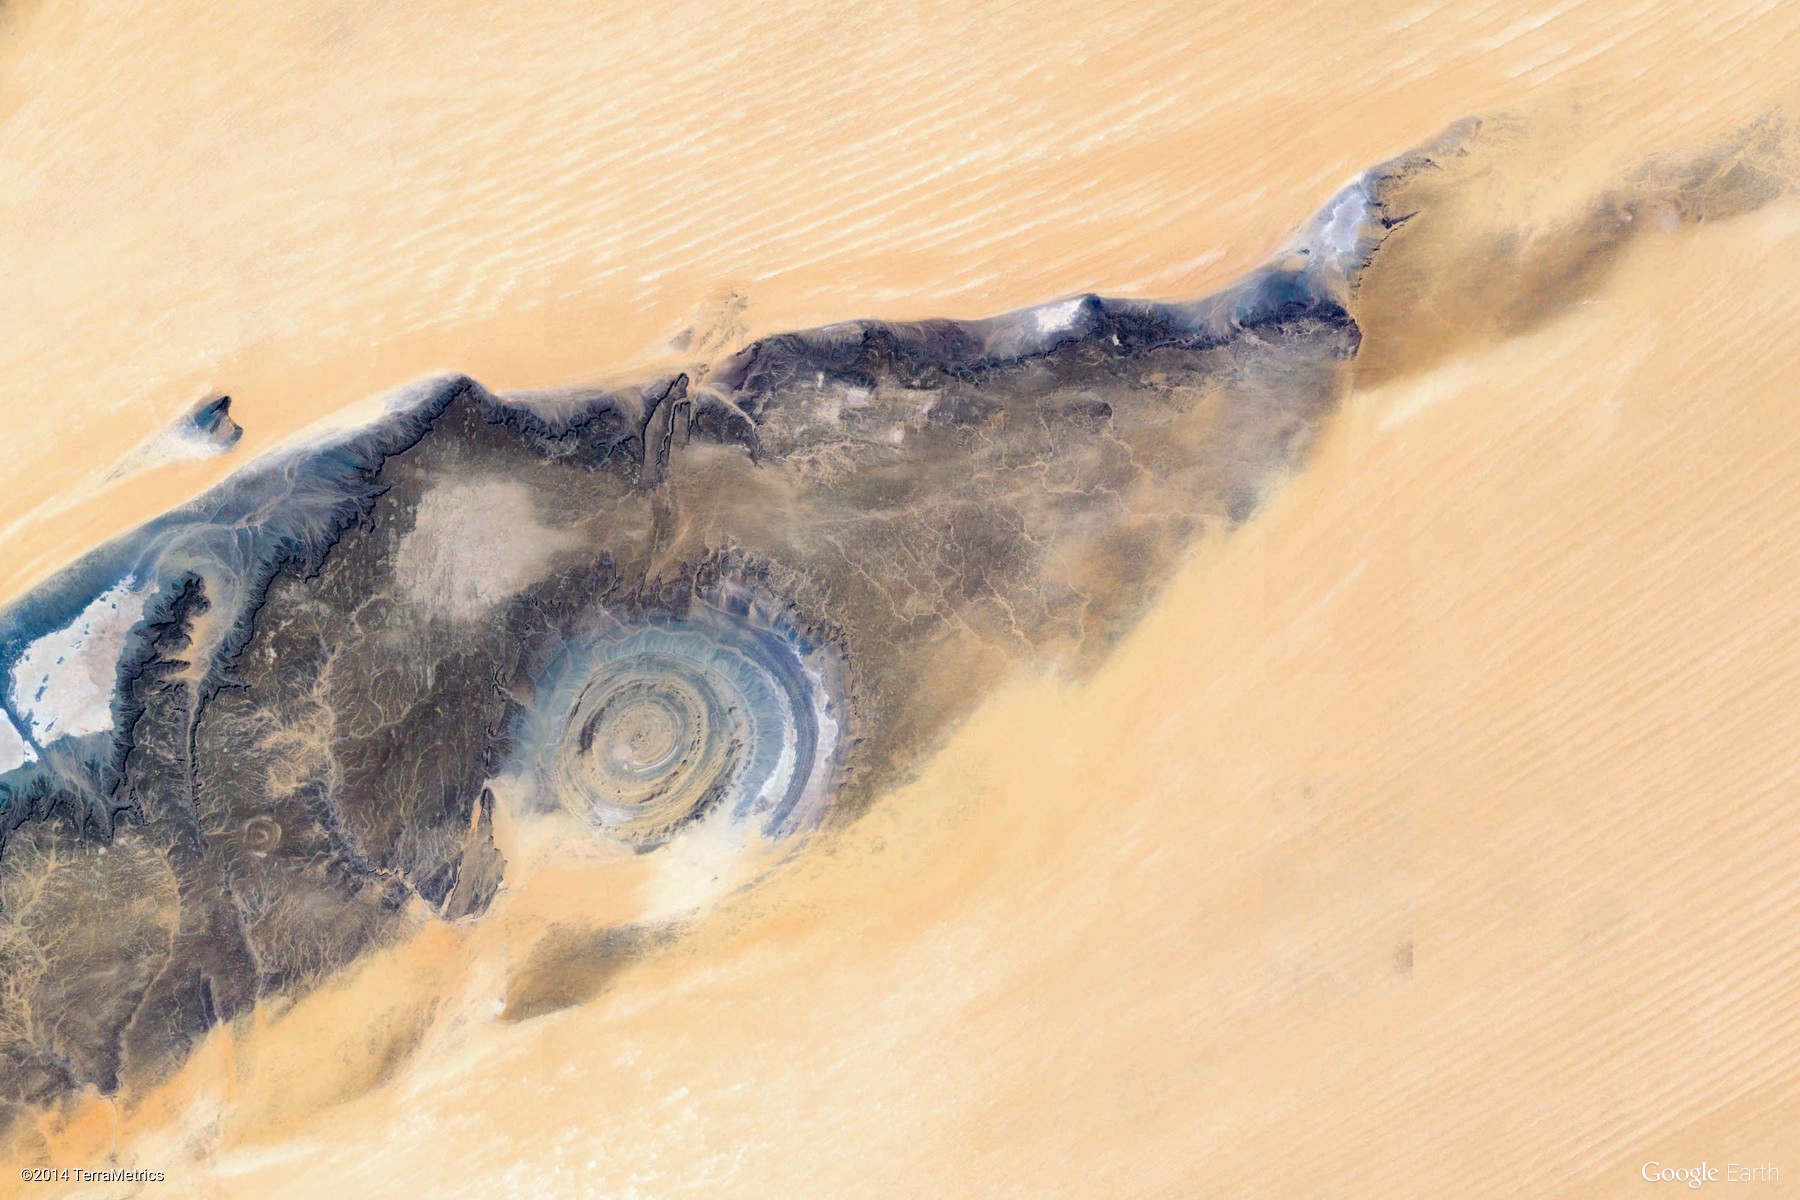 10张来自谷歌地图的卫星照片,非洲的沙漠中,出现一个巨型水池